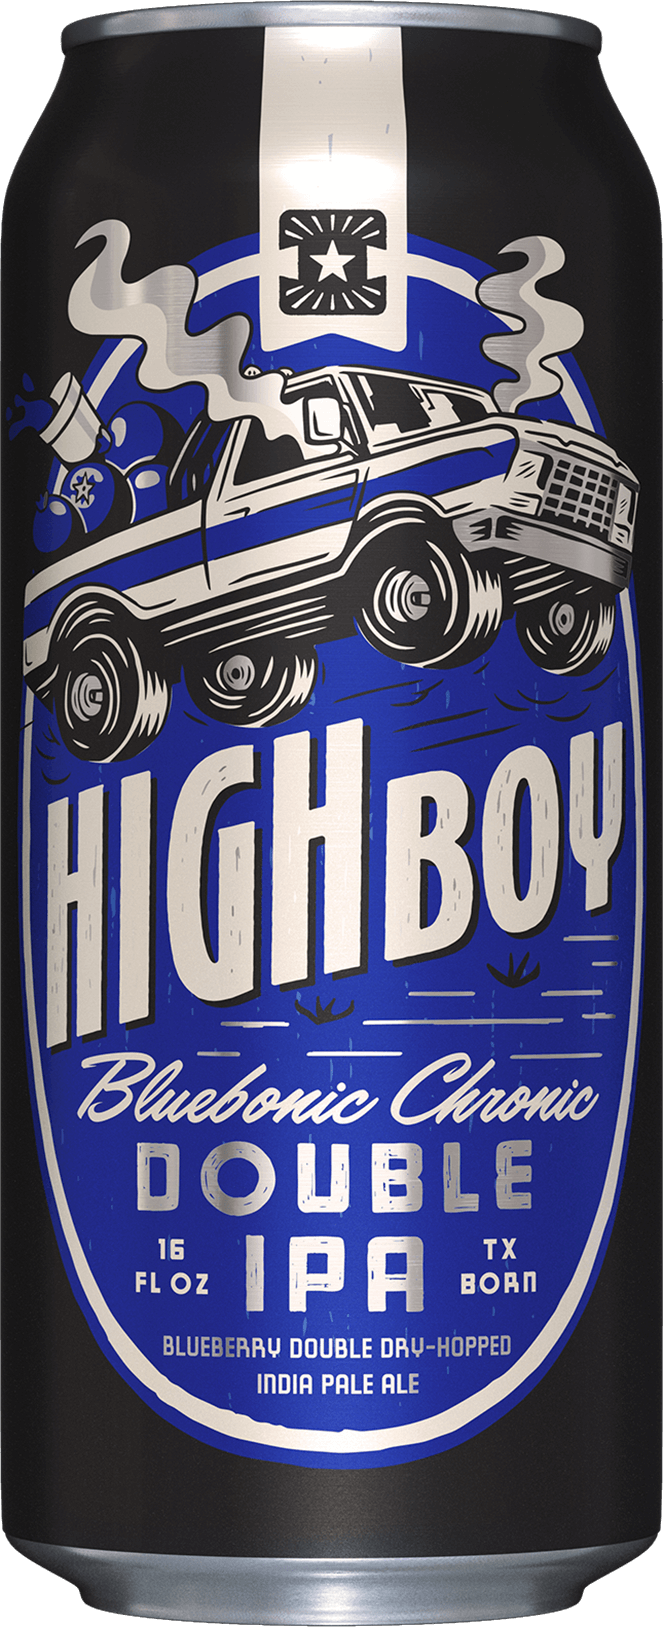 Highboy: Bluebonic Chronic